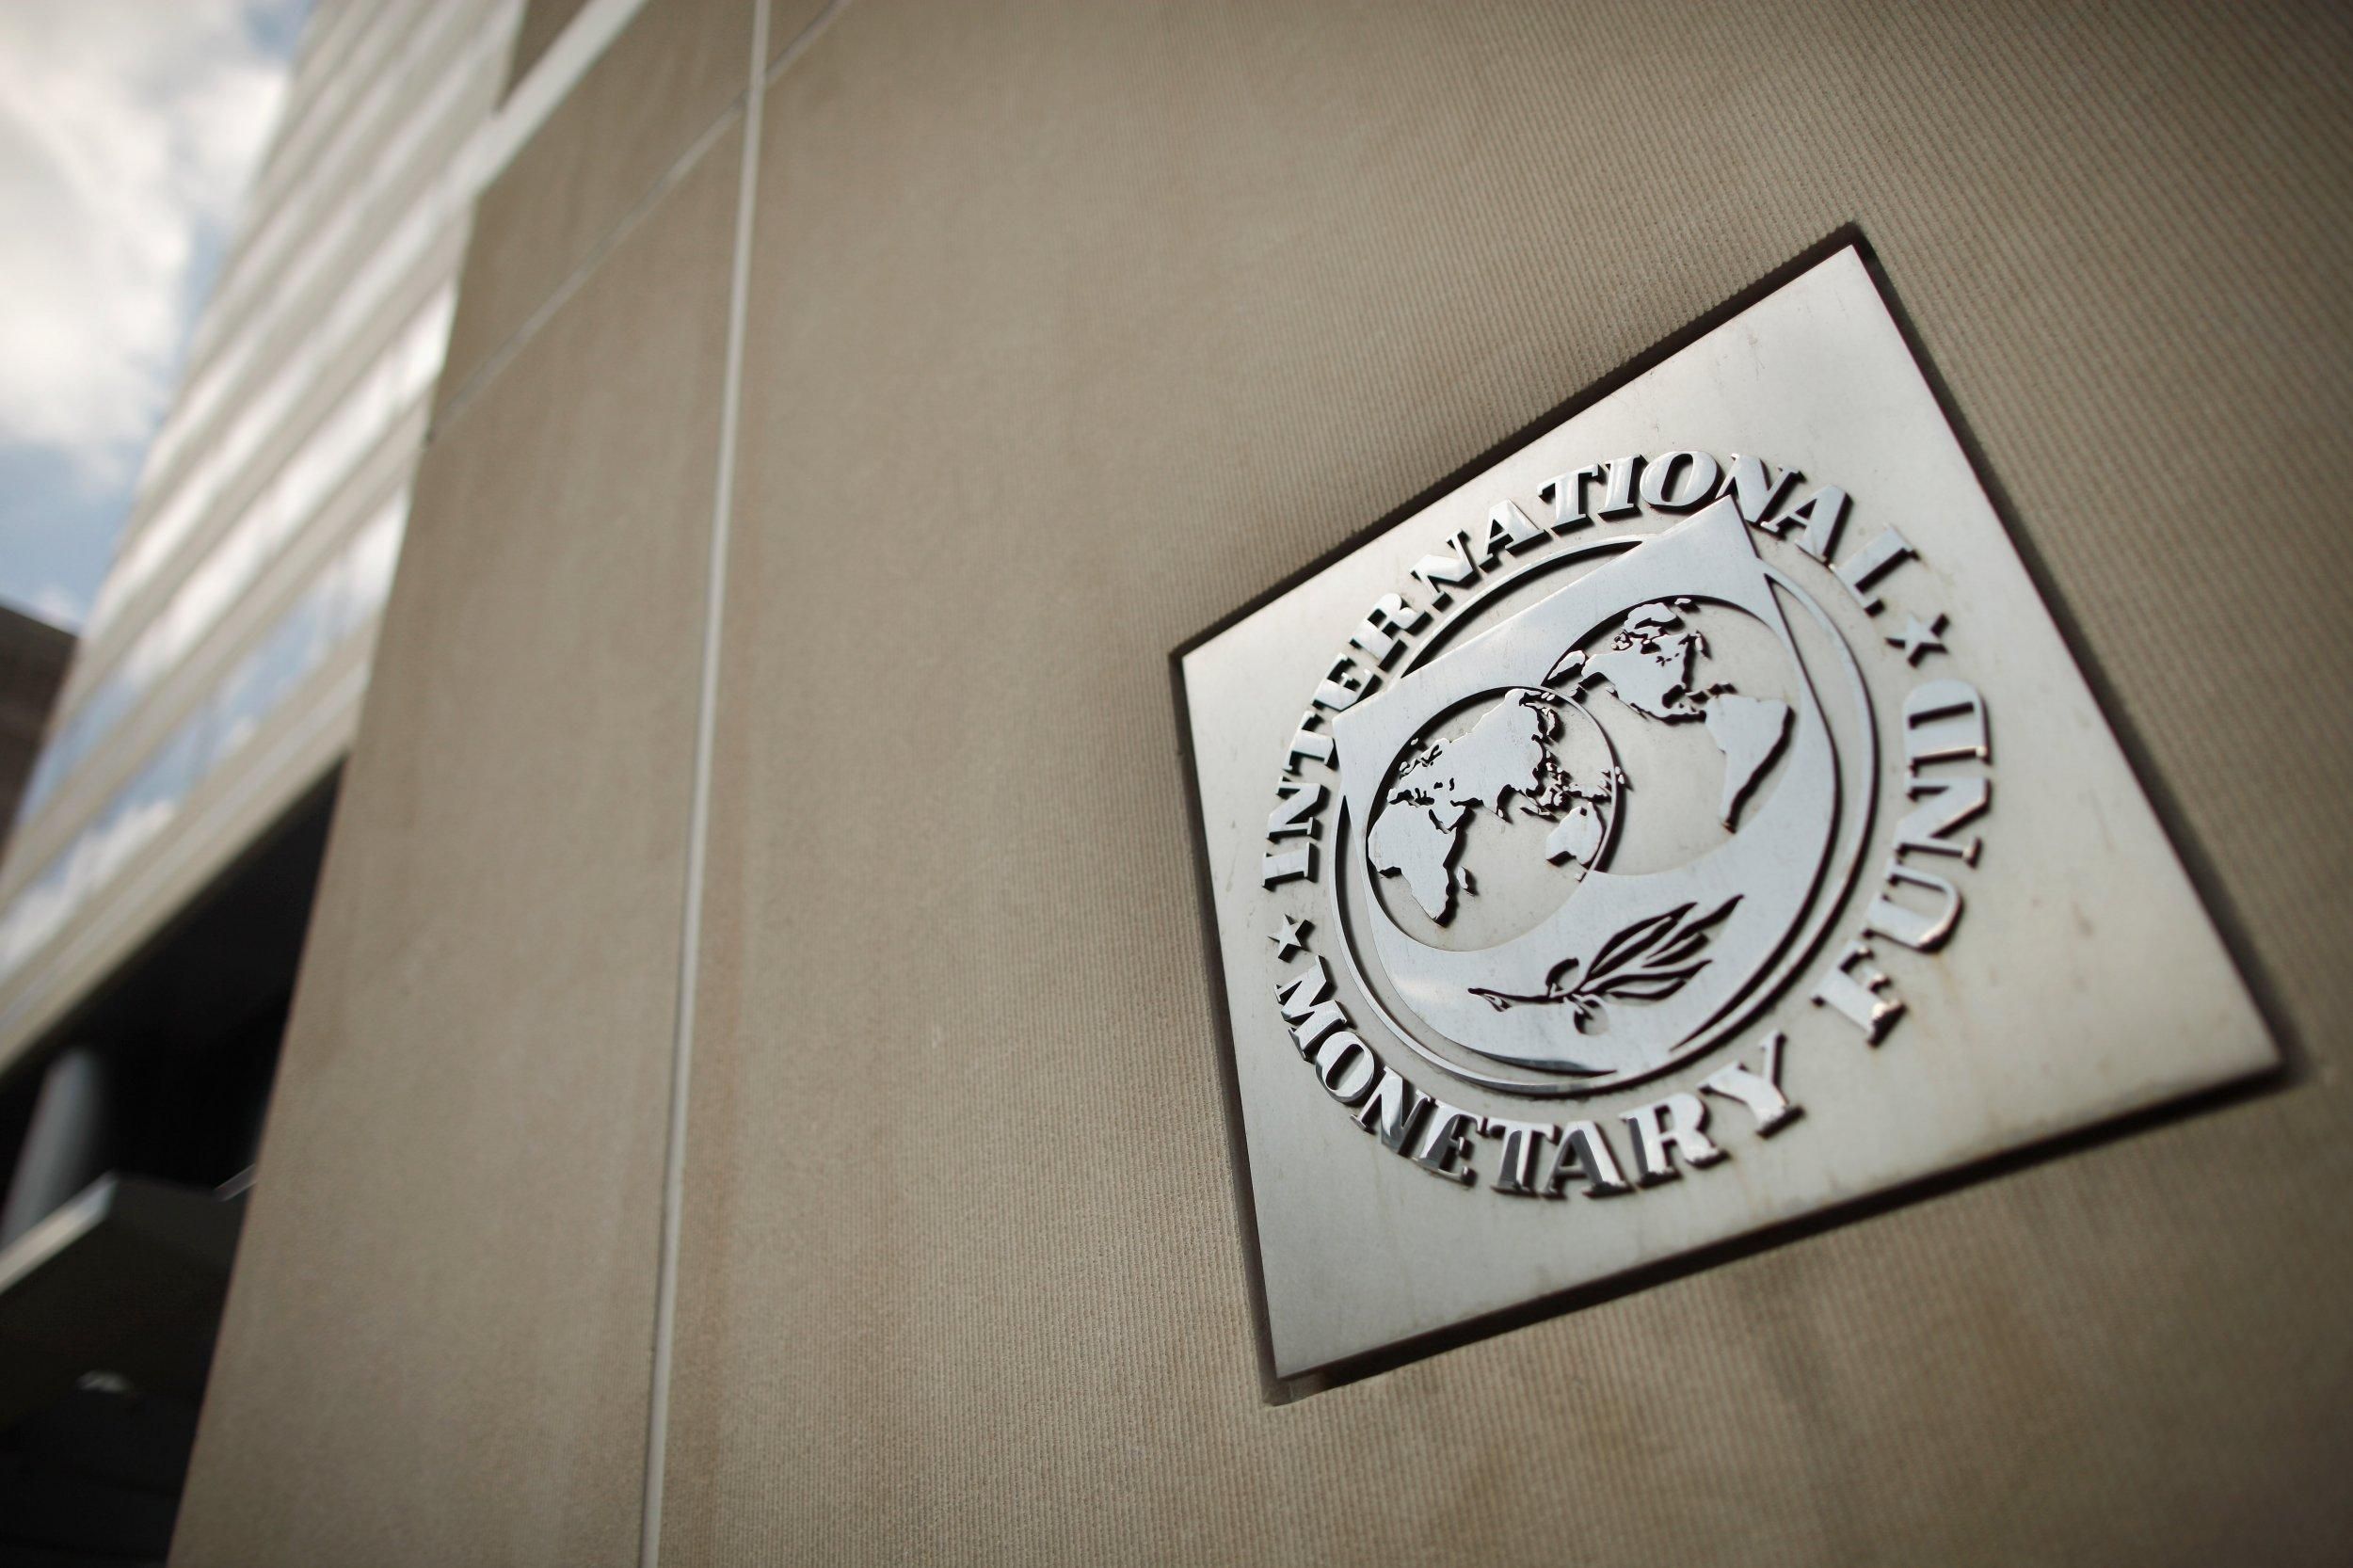 Місія МВФ приїде в Україну наступного тижня

